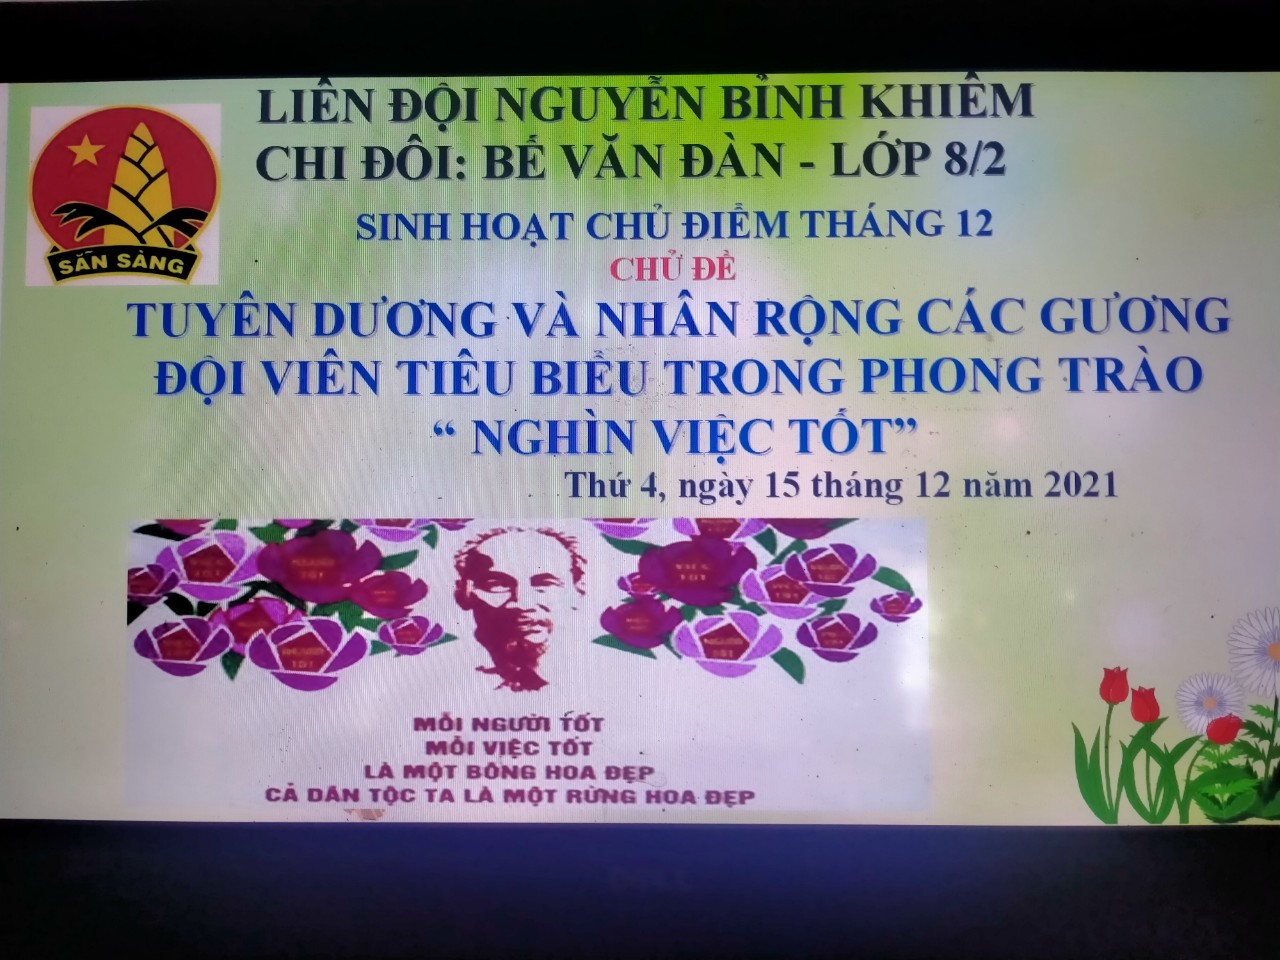 Liên đội THCS Nguyễn Bỉnh Khiêm tổ chức hoạt động hưởng ứng phong trào" Nghìn việc tốt"